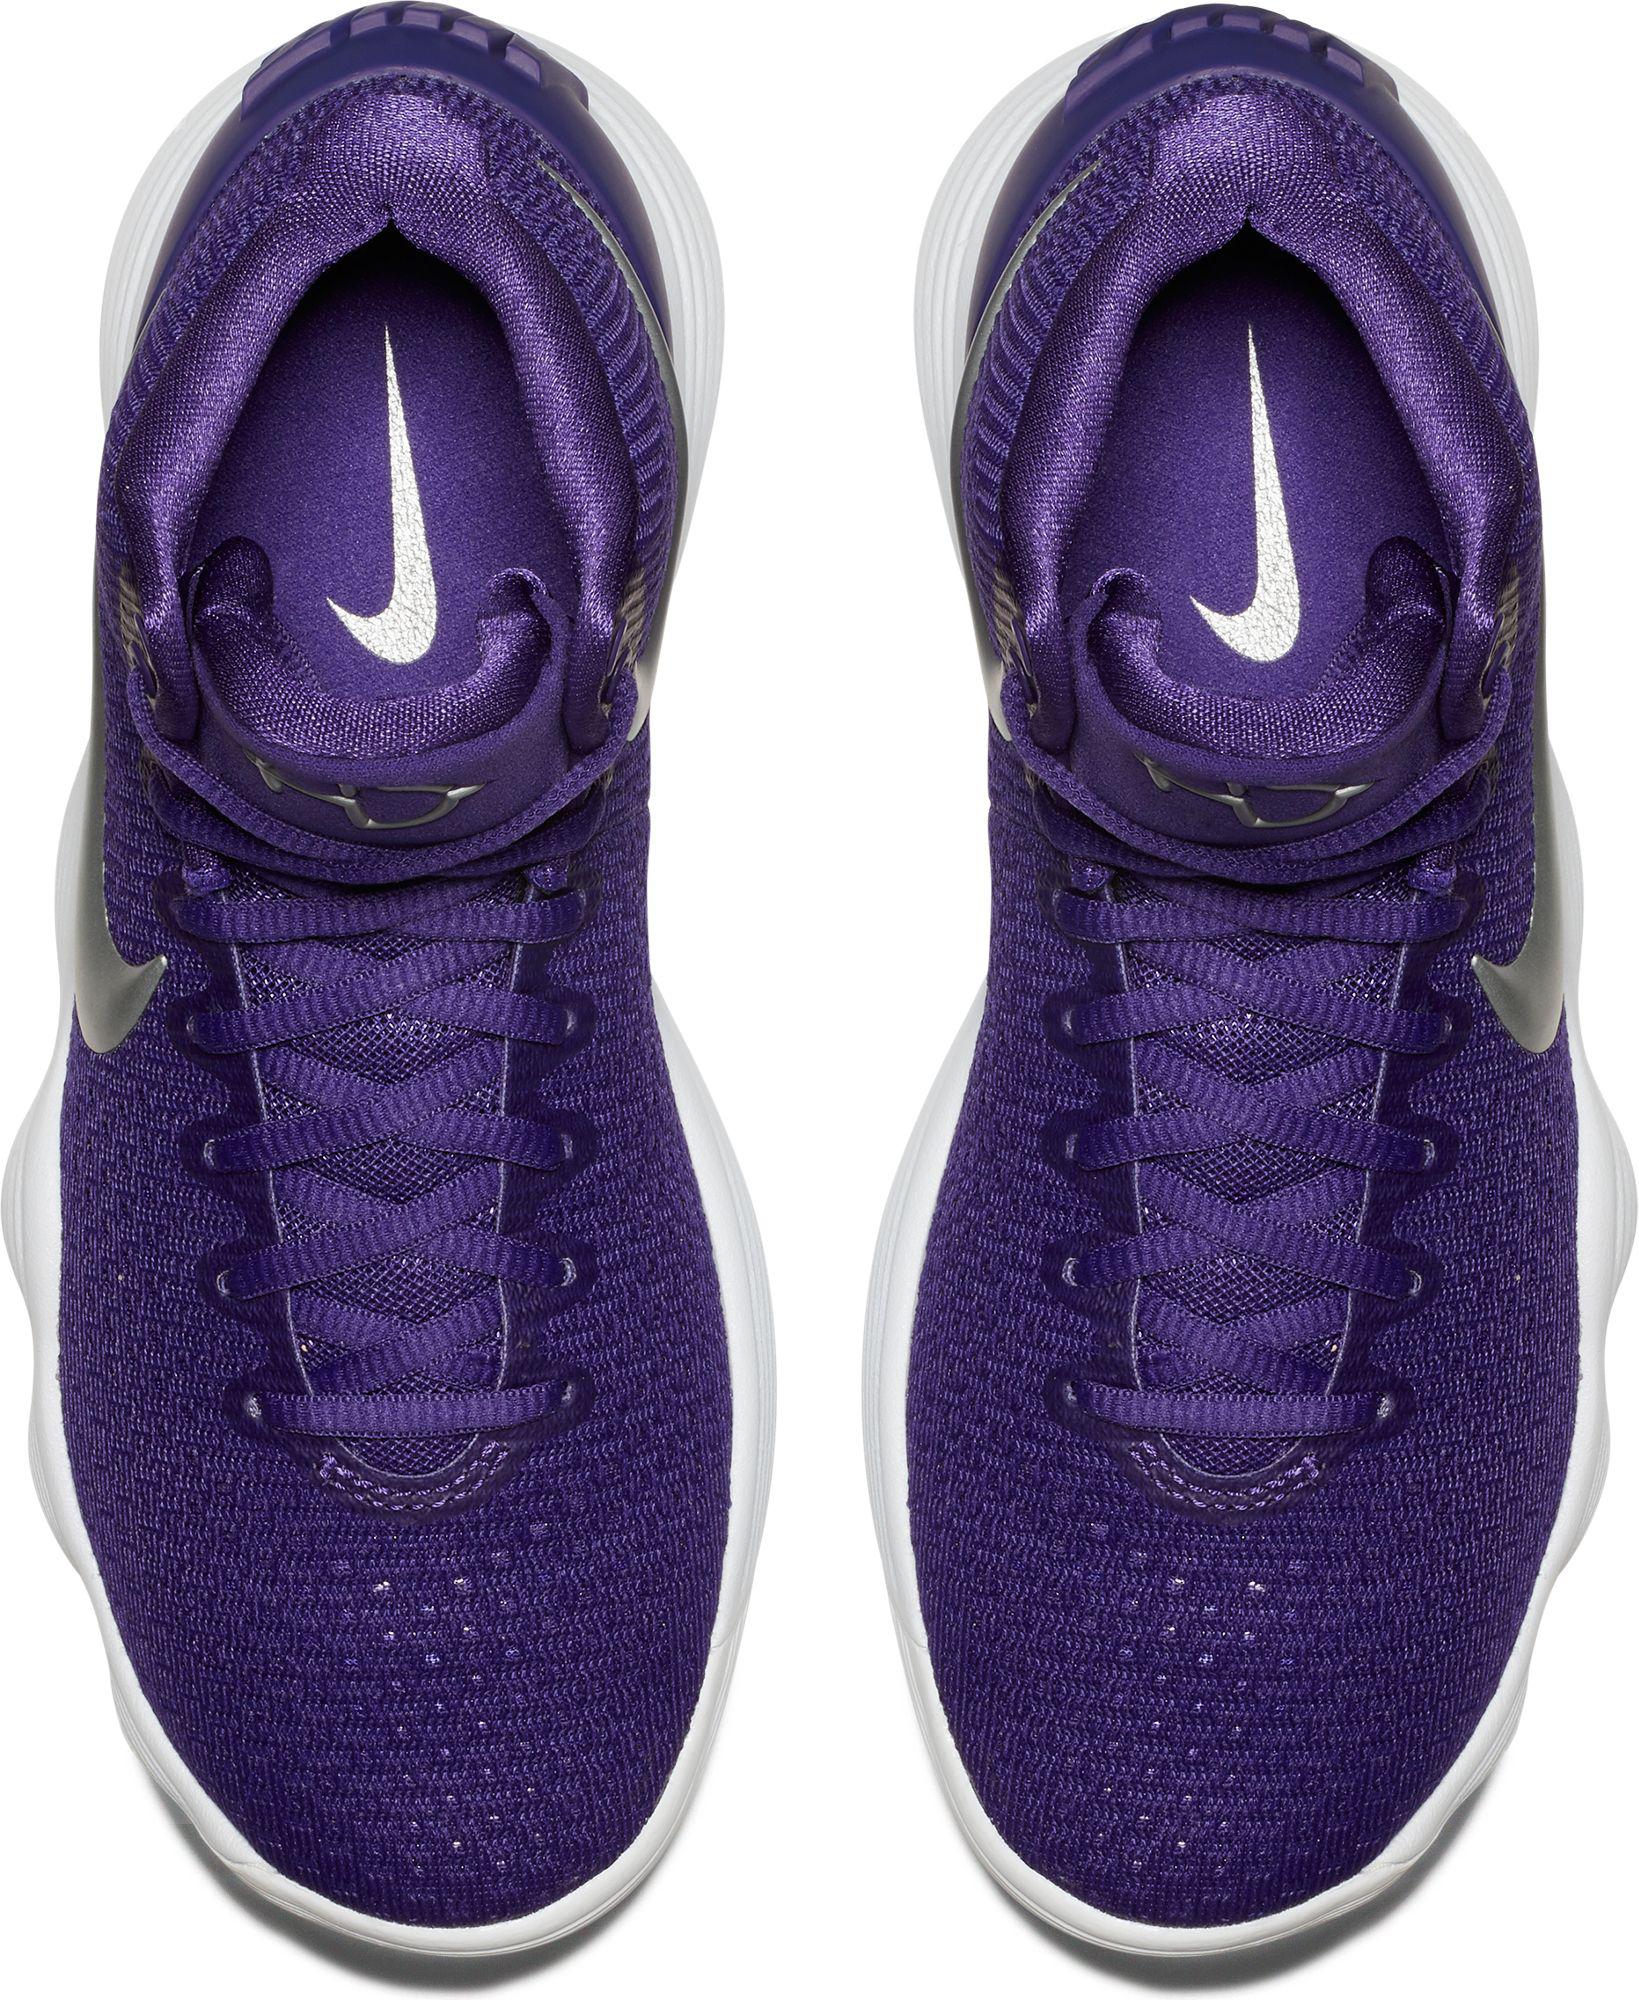 Lyst Nike Hyperdunk 2017 Basketball Shoes in Purple